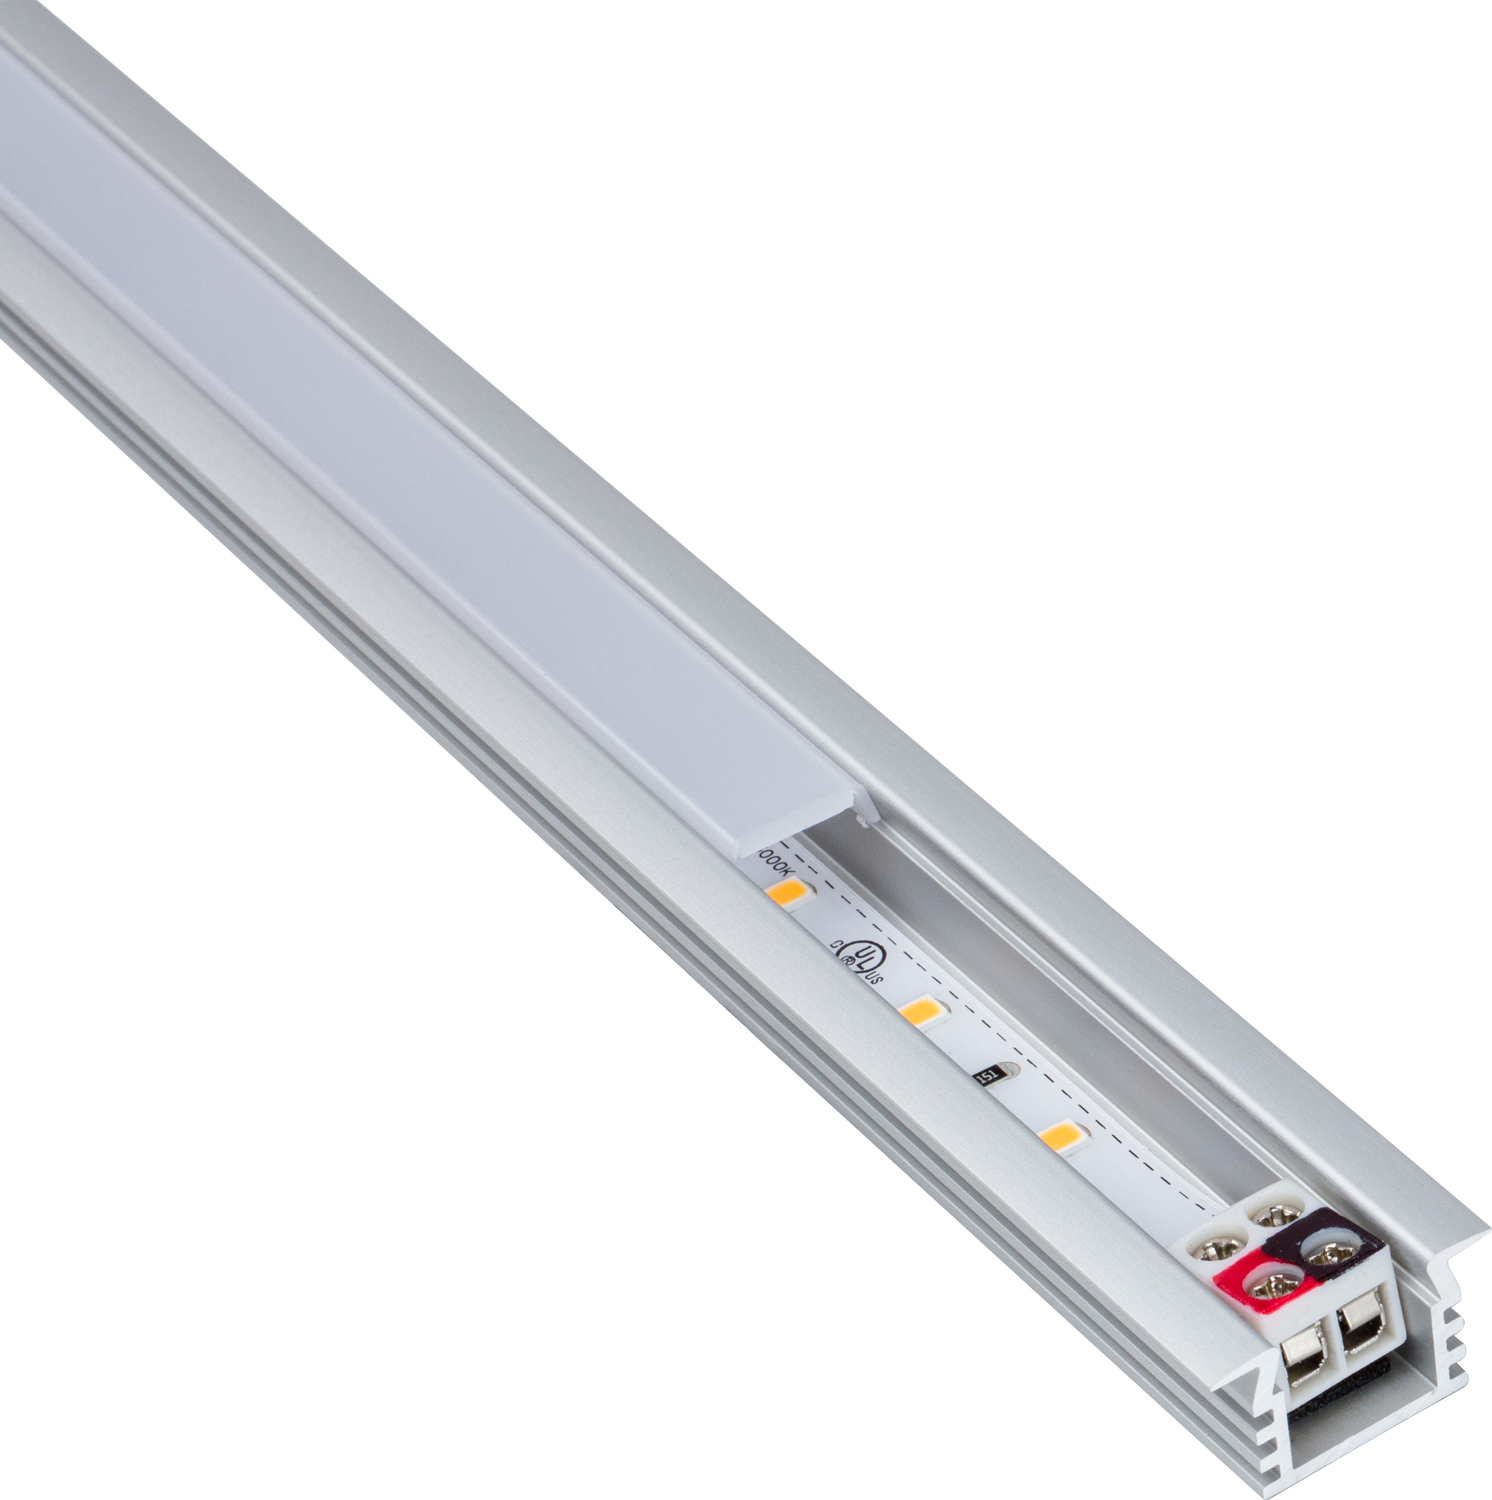 led kitchen worktop lighting strip Task Lighting Linear Fixtures;Single-white Lighting Aluminum